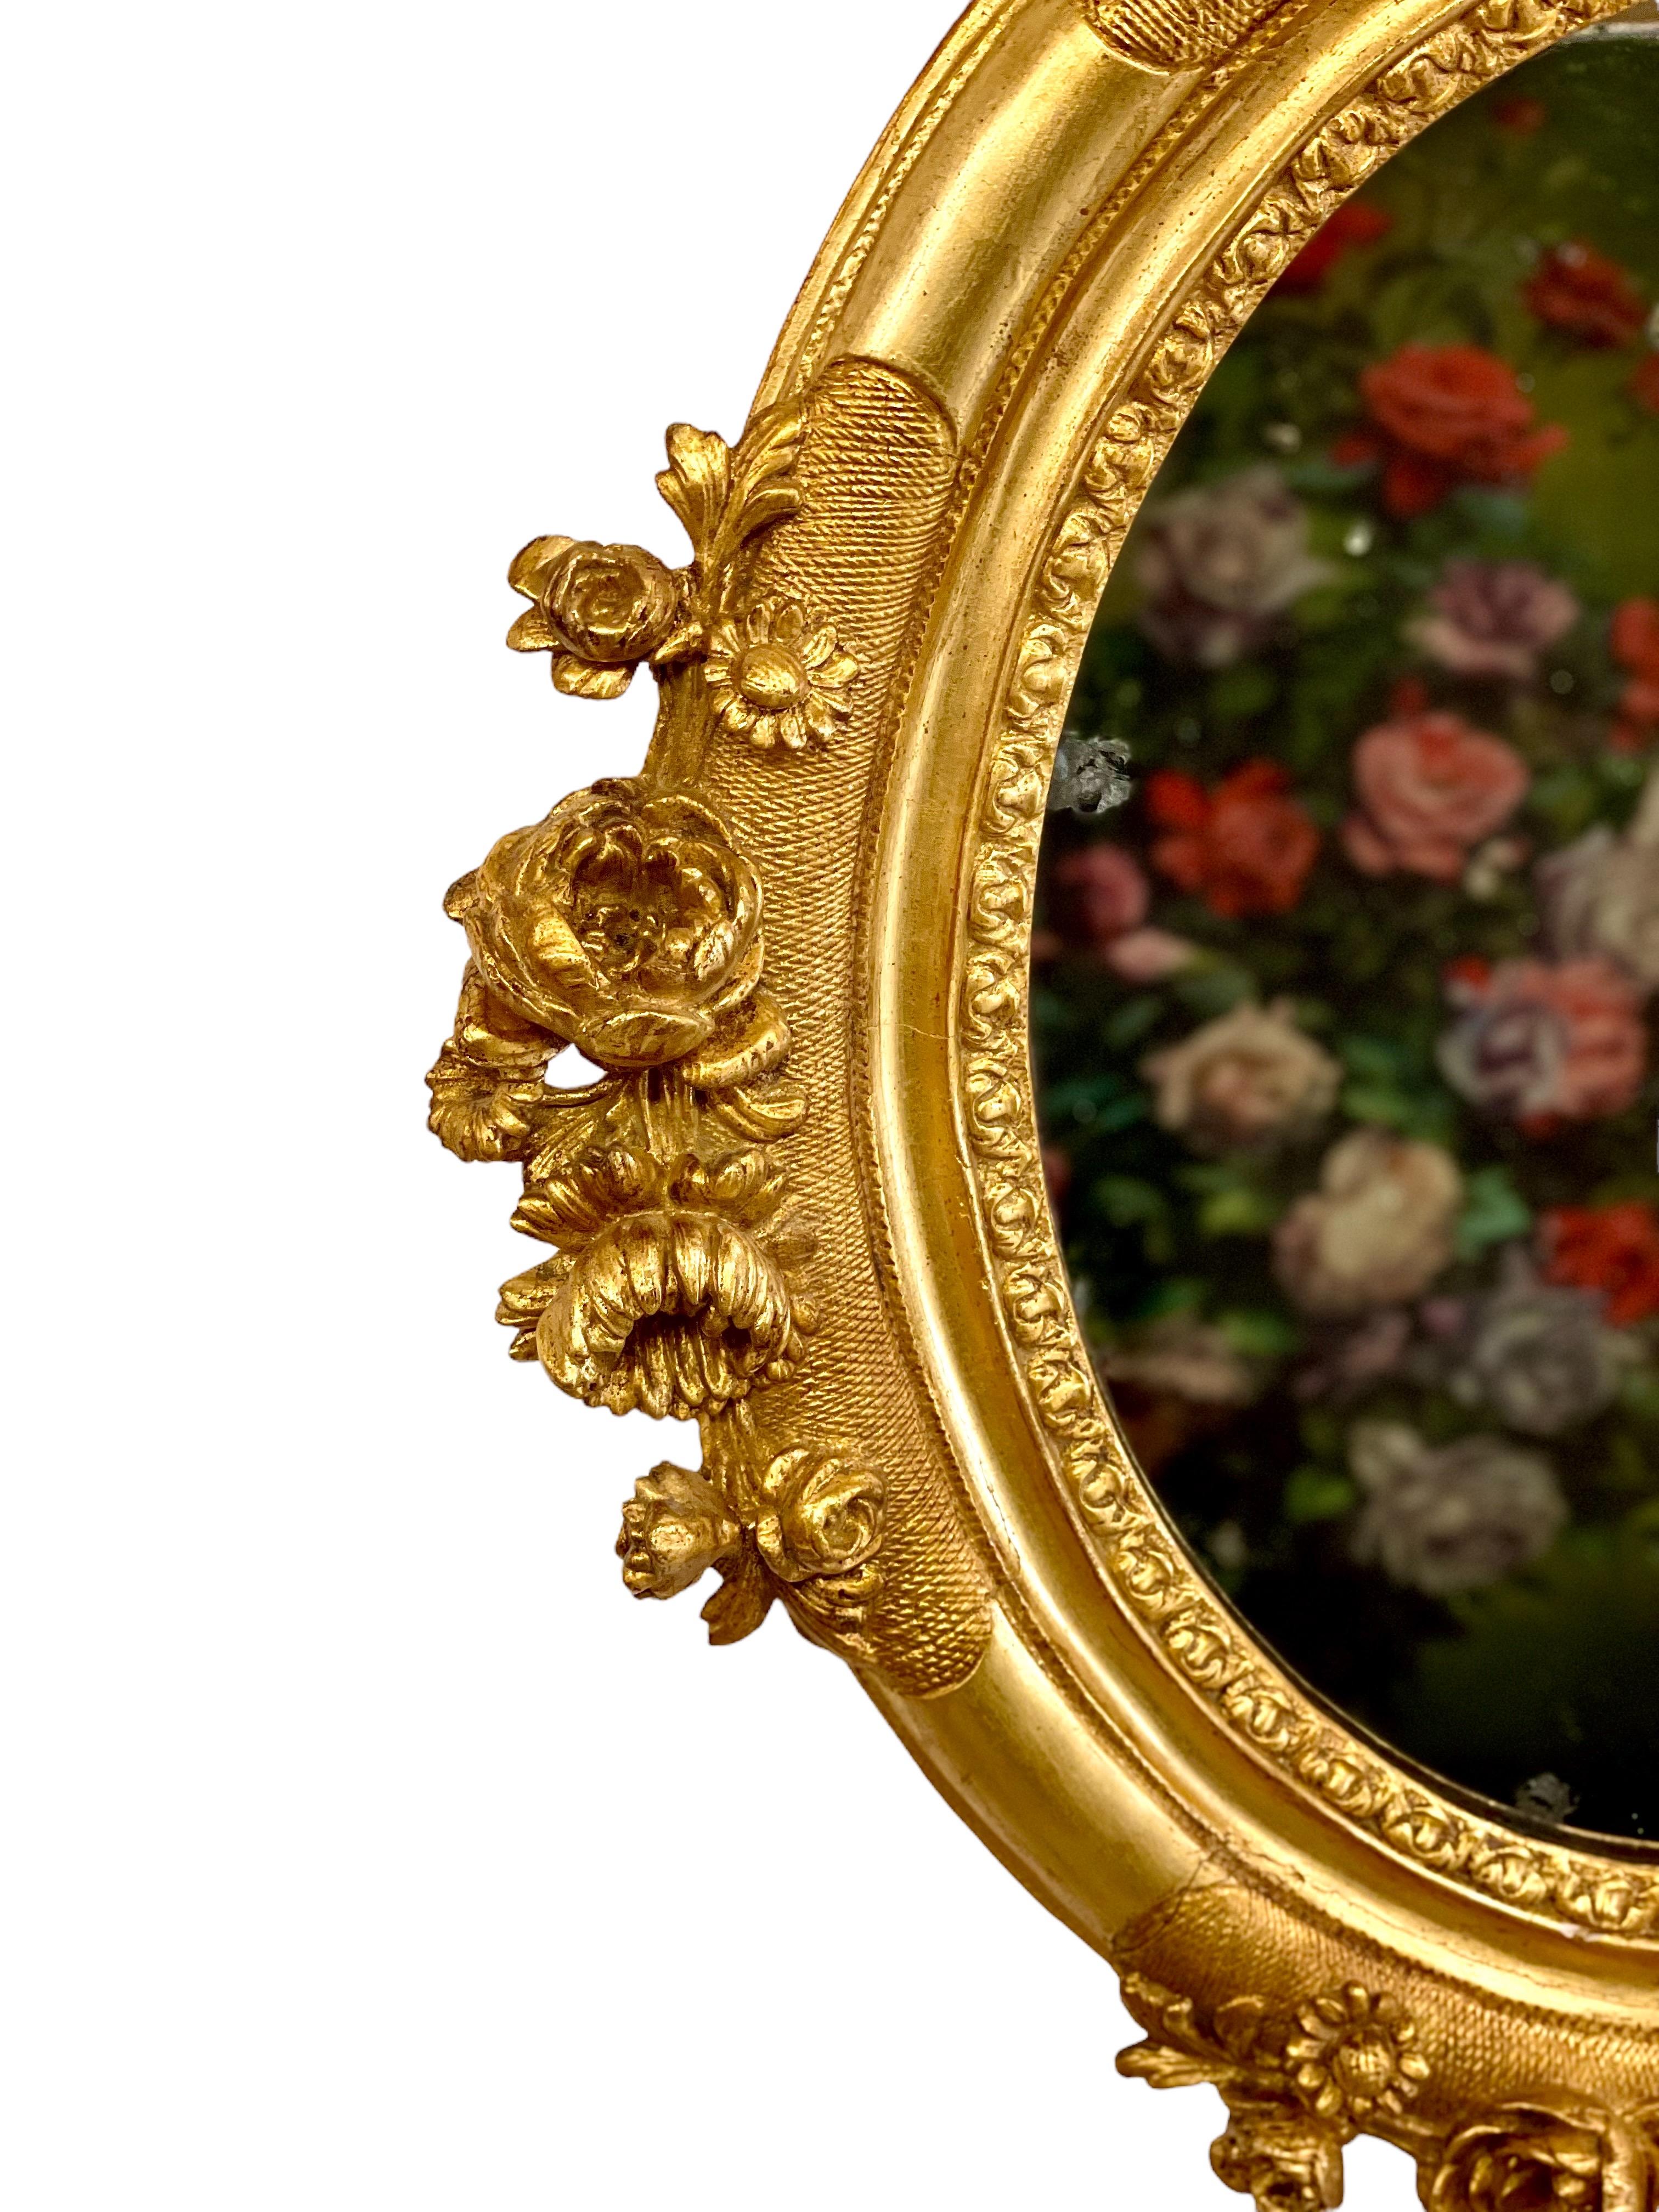 Miroir ovale de style Louis XVI, magnifiquement encadré de bois doré et de stuc, orné de motifs floraux de pivoines, de marguerites et de chrysanthèmes en haut-relief sur ses quatre côtés. Cet élégant miroir serait un ornement remarquable sur le mur